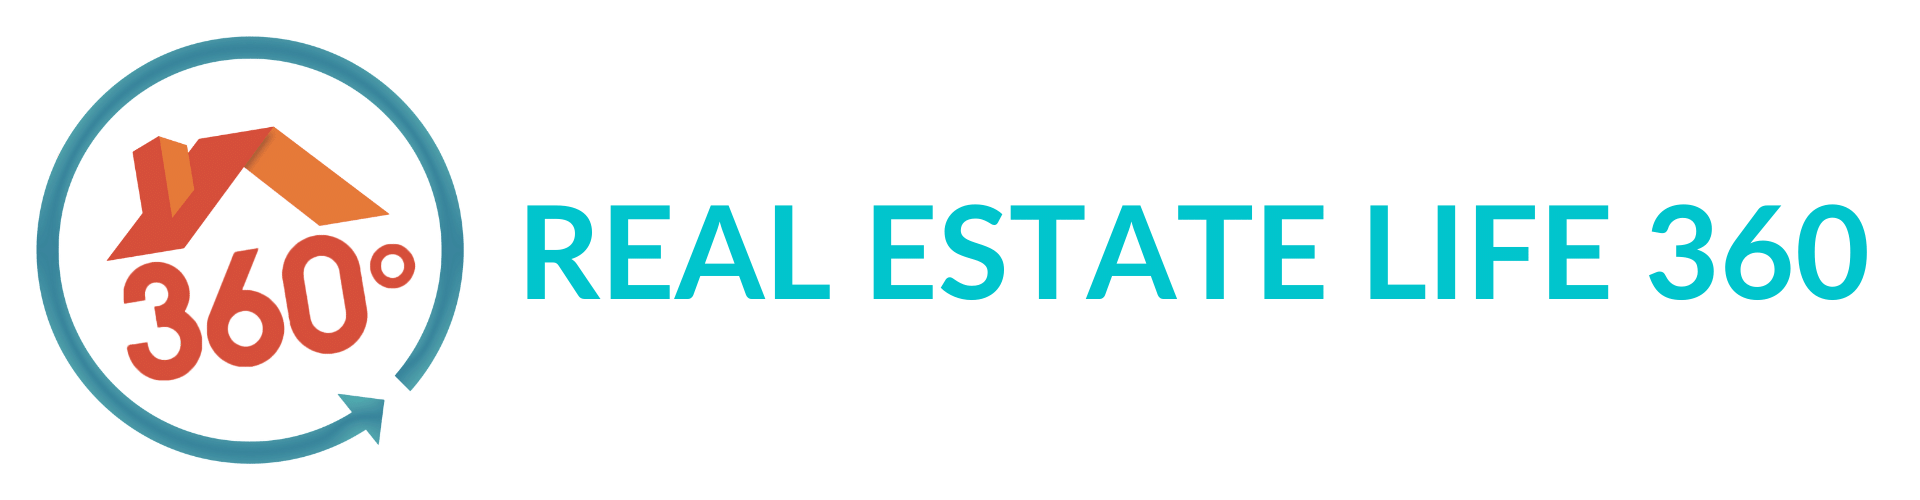 Real Estate Life 360 logo